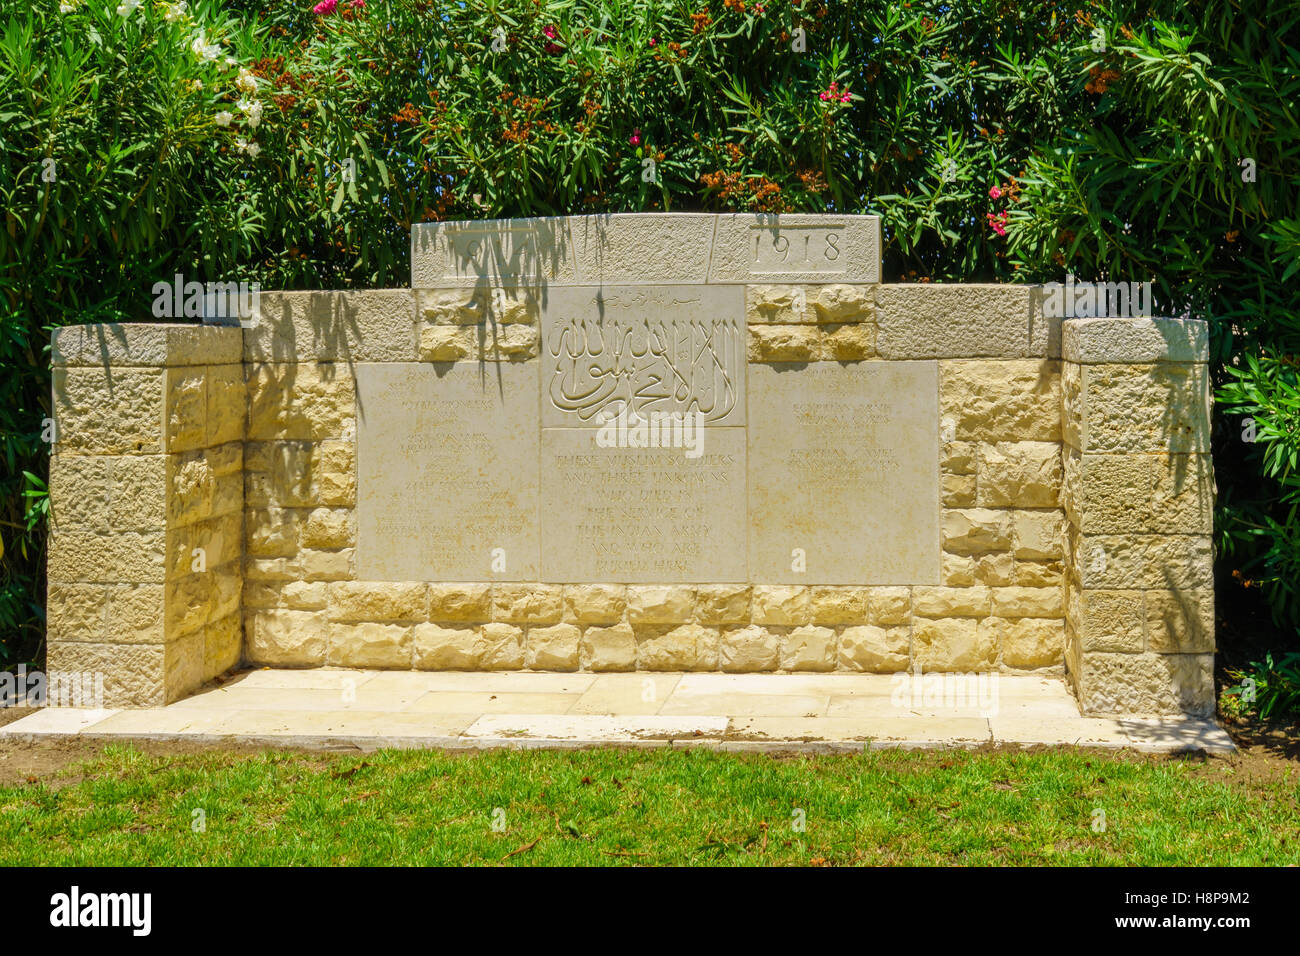 Haïfa, Israël - 21 juillet 2015 : un monument pour l'Empire britannique (les soldats musulmans de l'Inde) qui sont morts dans la Première Guerre mondiale, dans la région de downt Banque D'Images